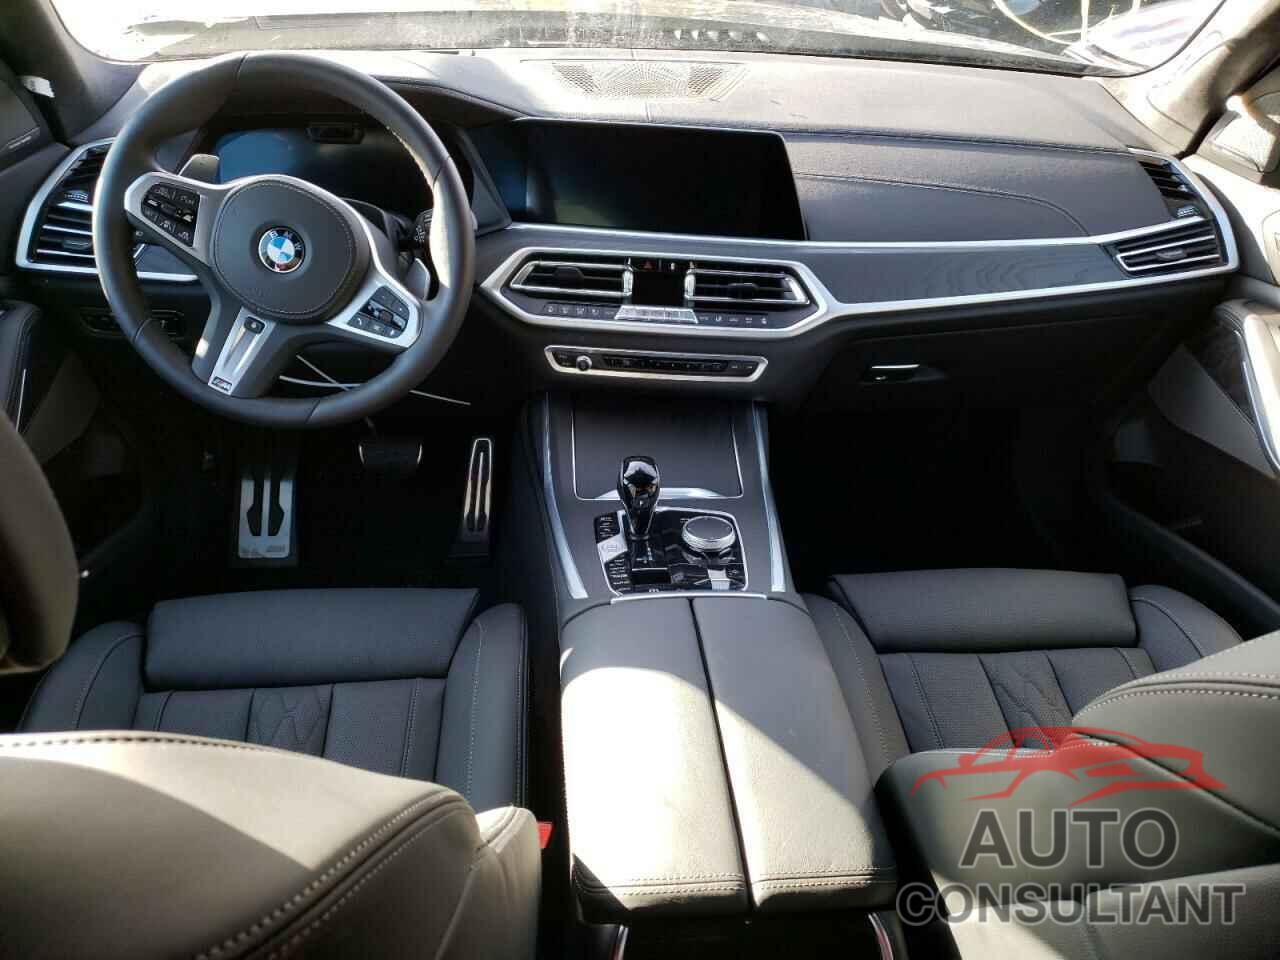 BMW X7 2022 - 5UXCX6C0XN9M80542